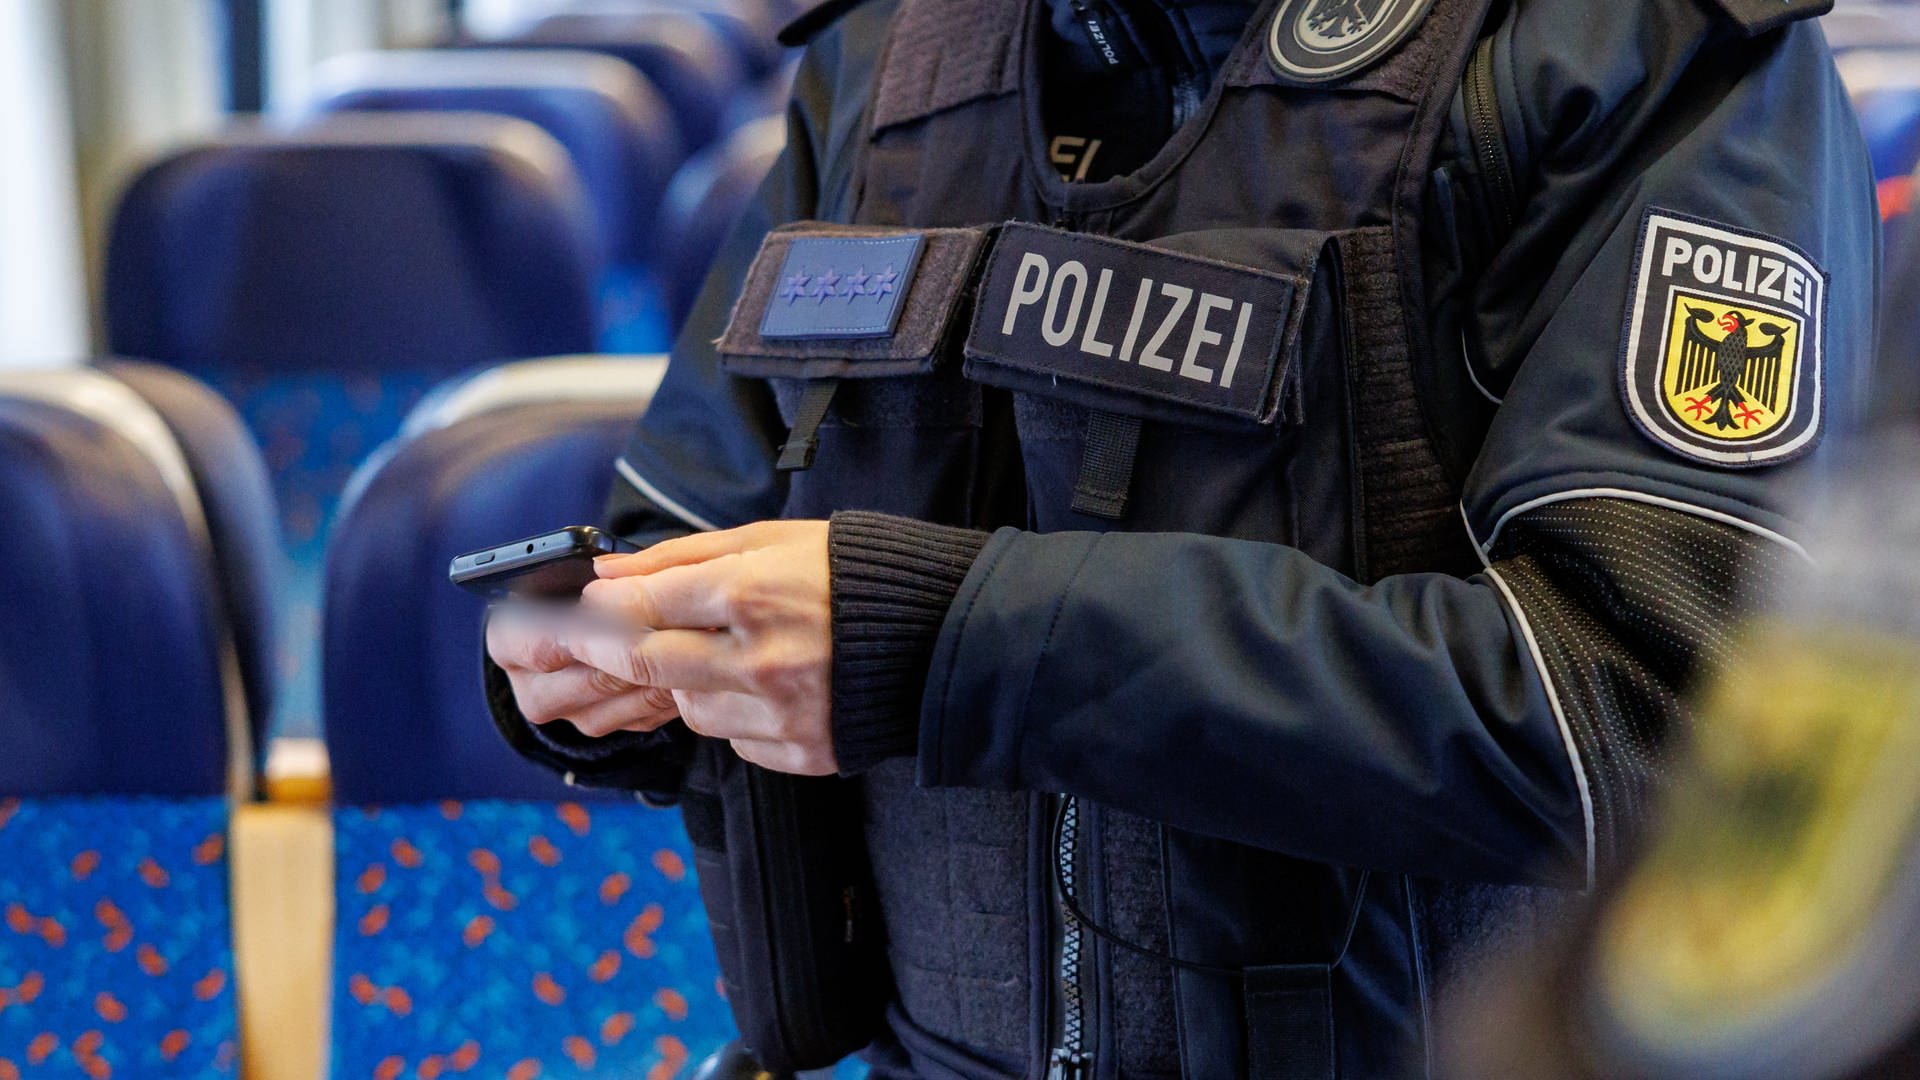 Angriff mit Cuttermesser und Bisse: Mann verletzt Polizisten in Karlsruhe